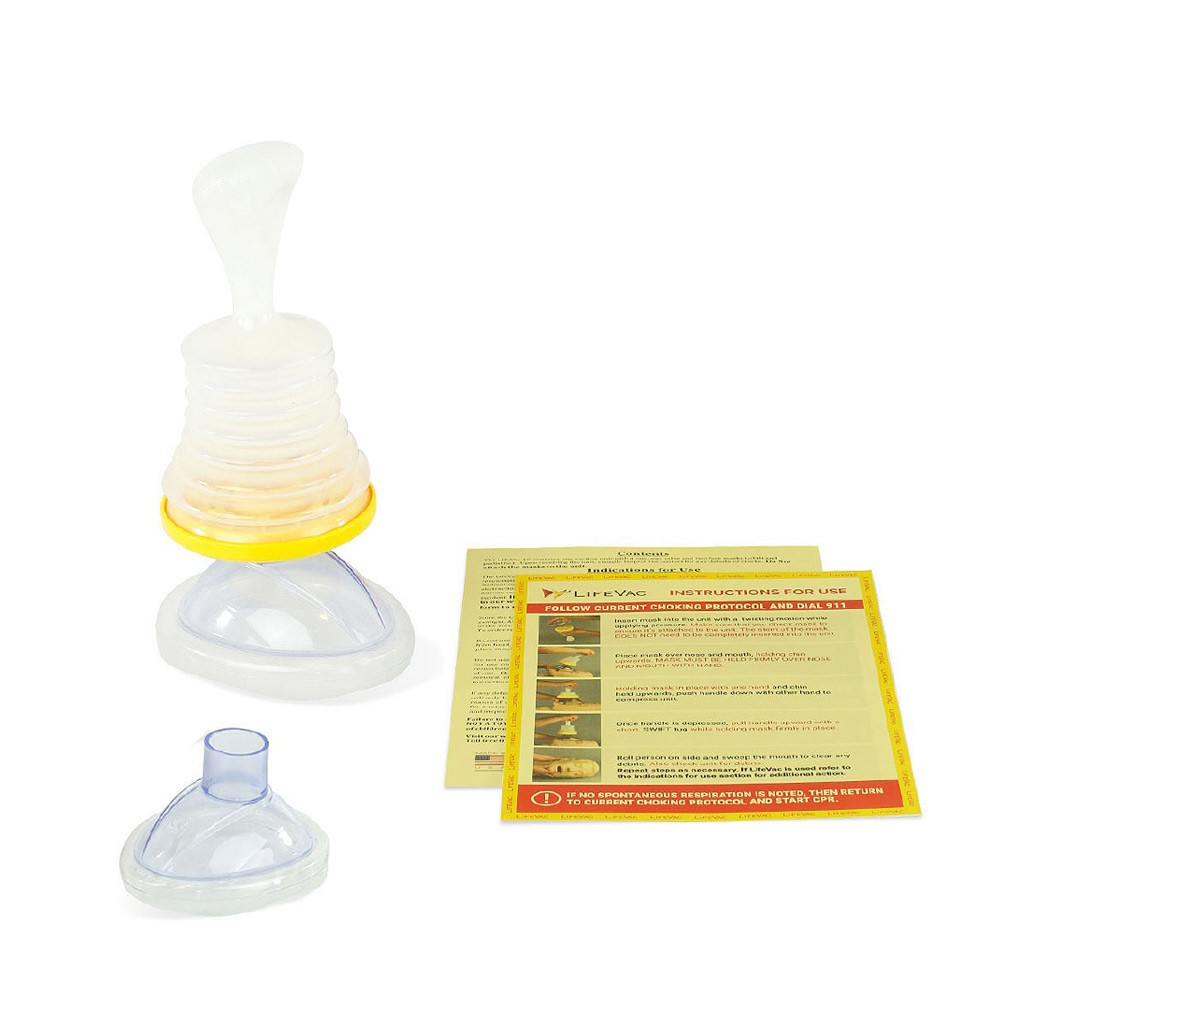 LifeVac Anti-choking Device - EMS Kit